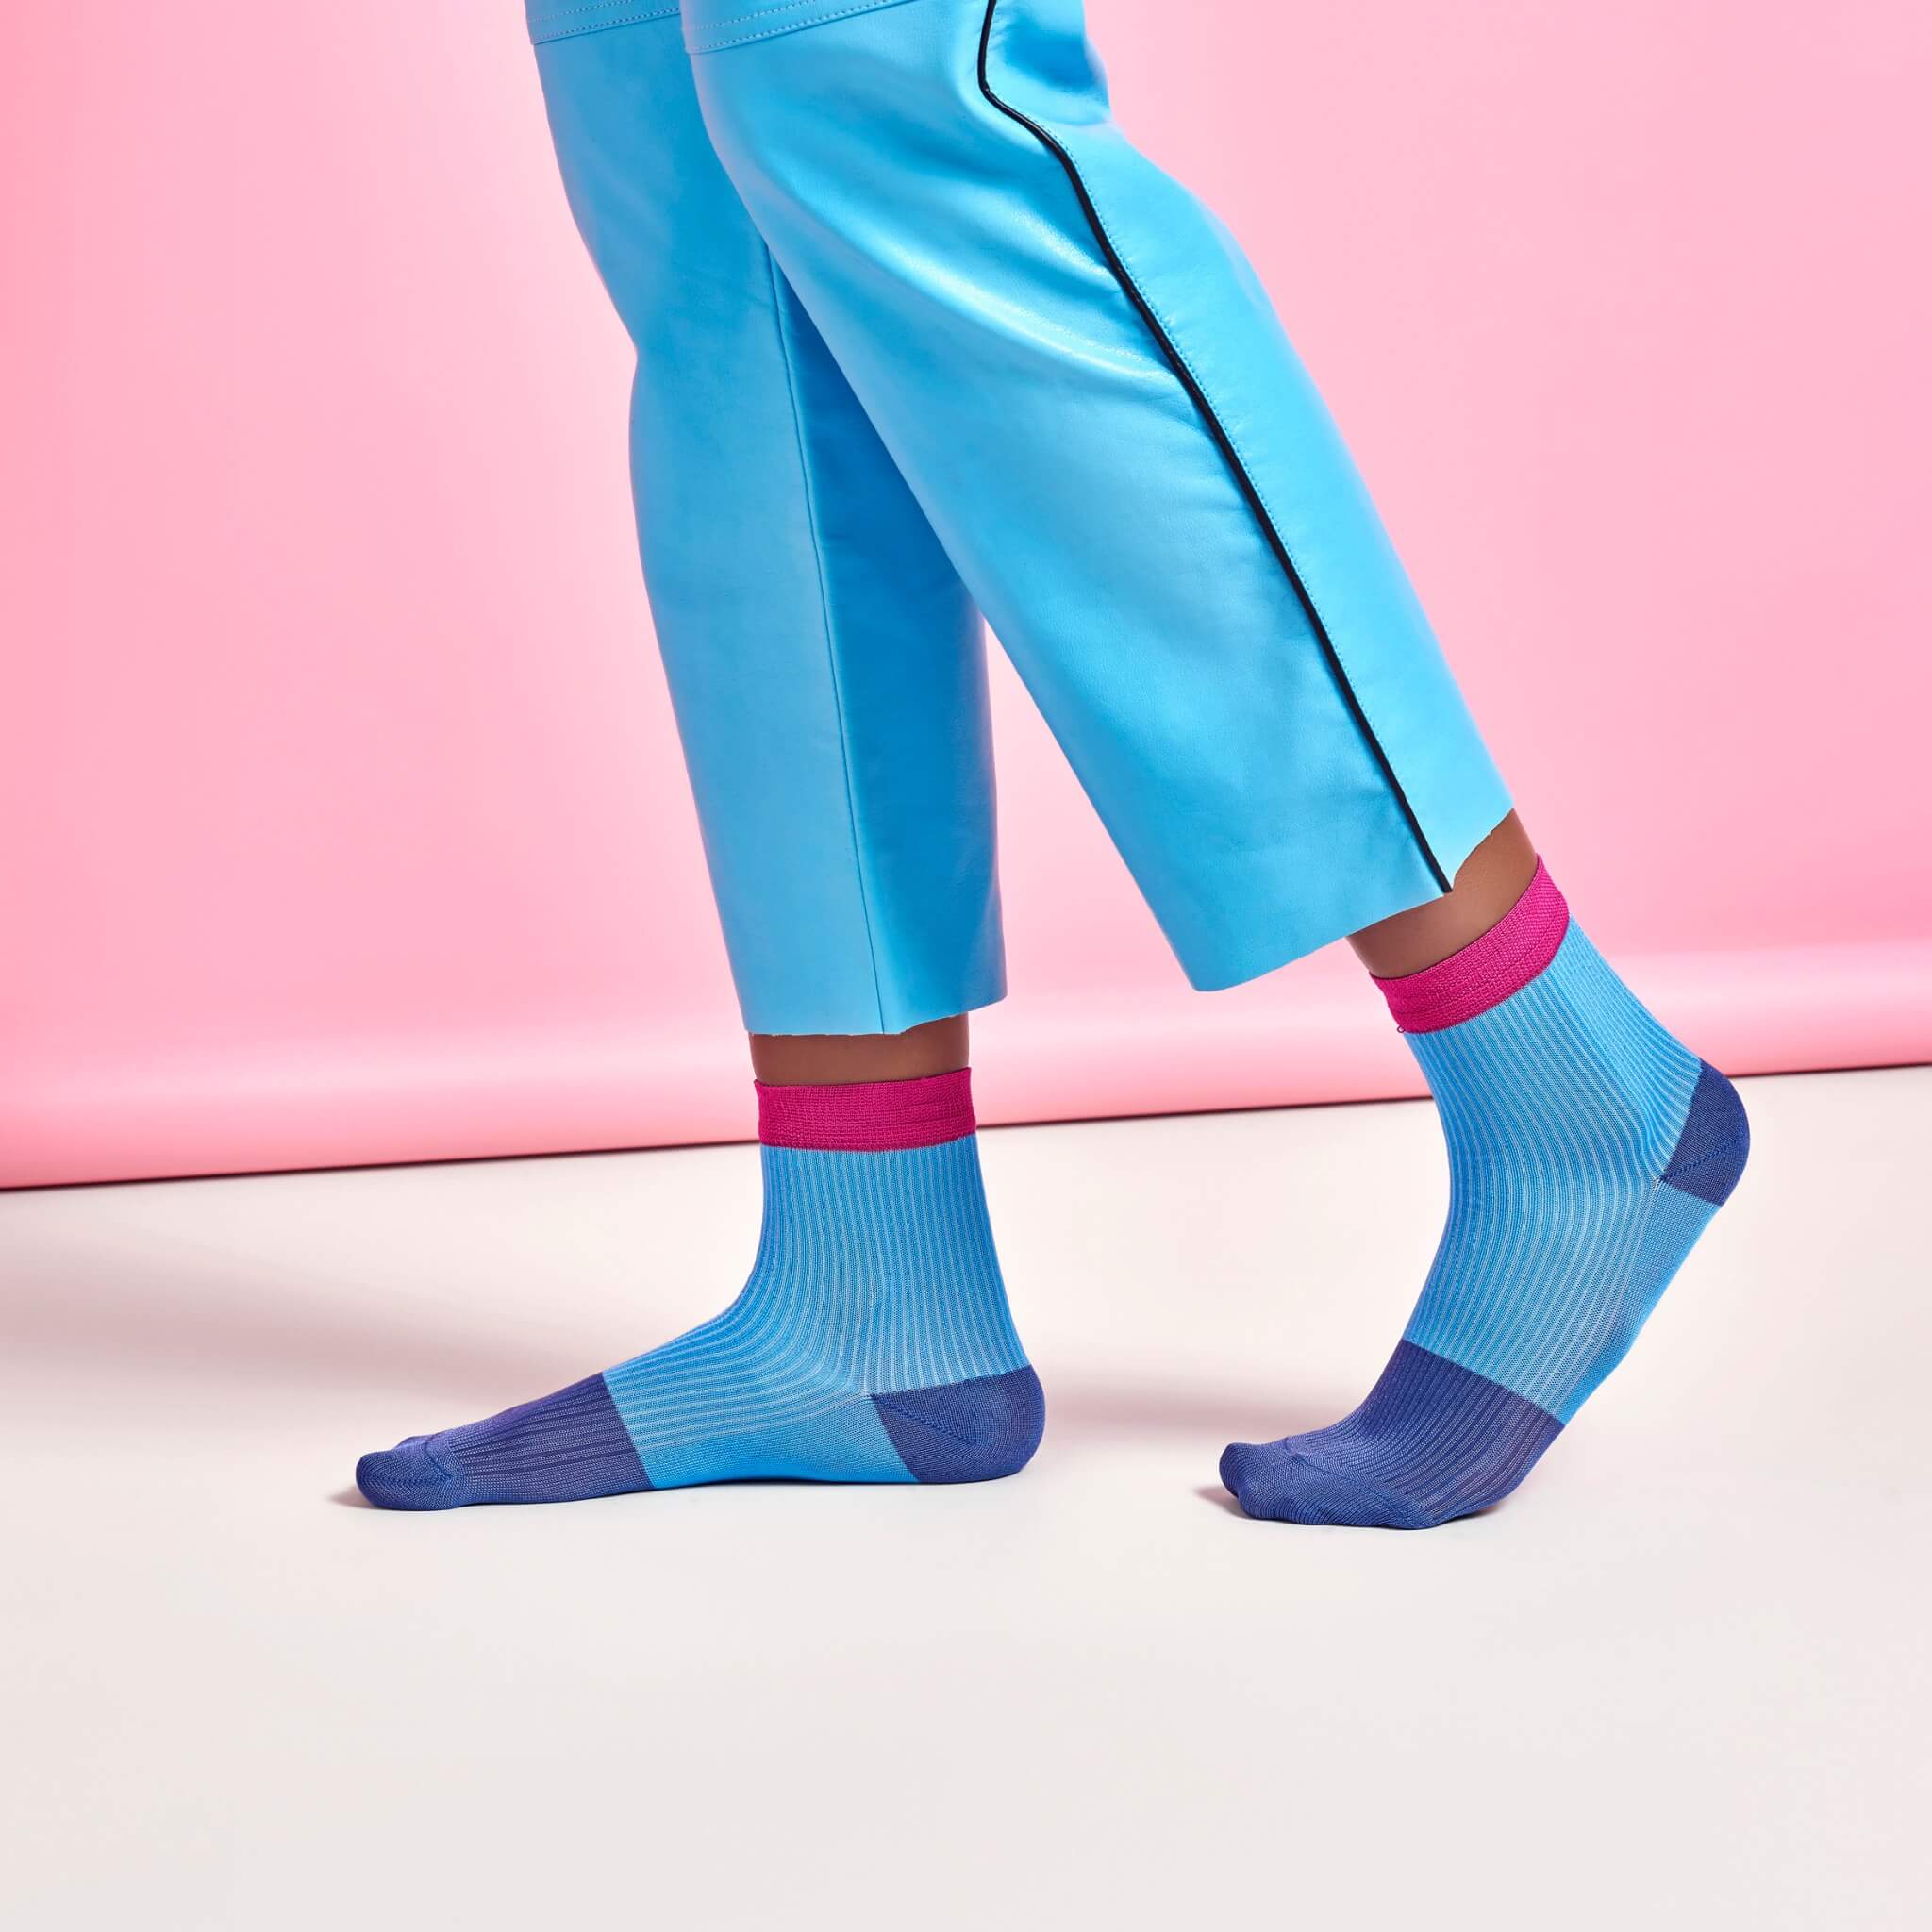 Dámské modré ponožky Happy Socks Janna // kolekce Hysteria